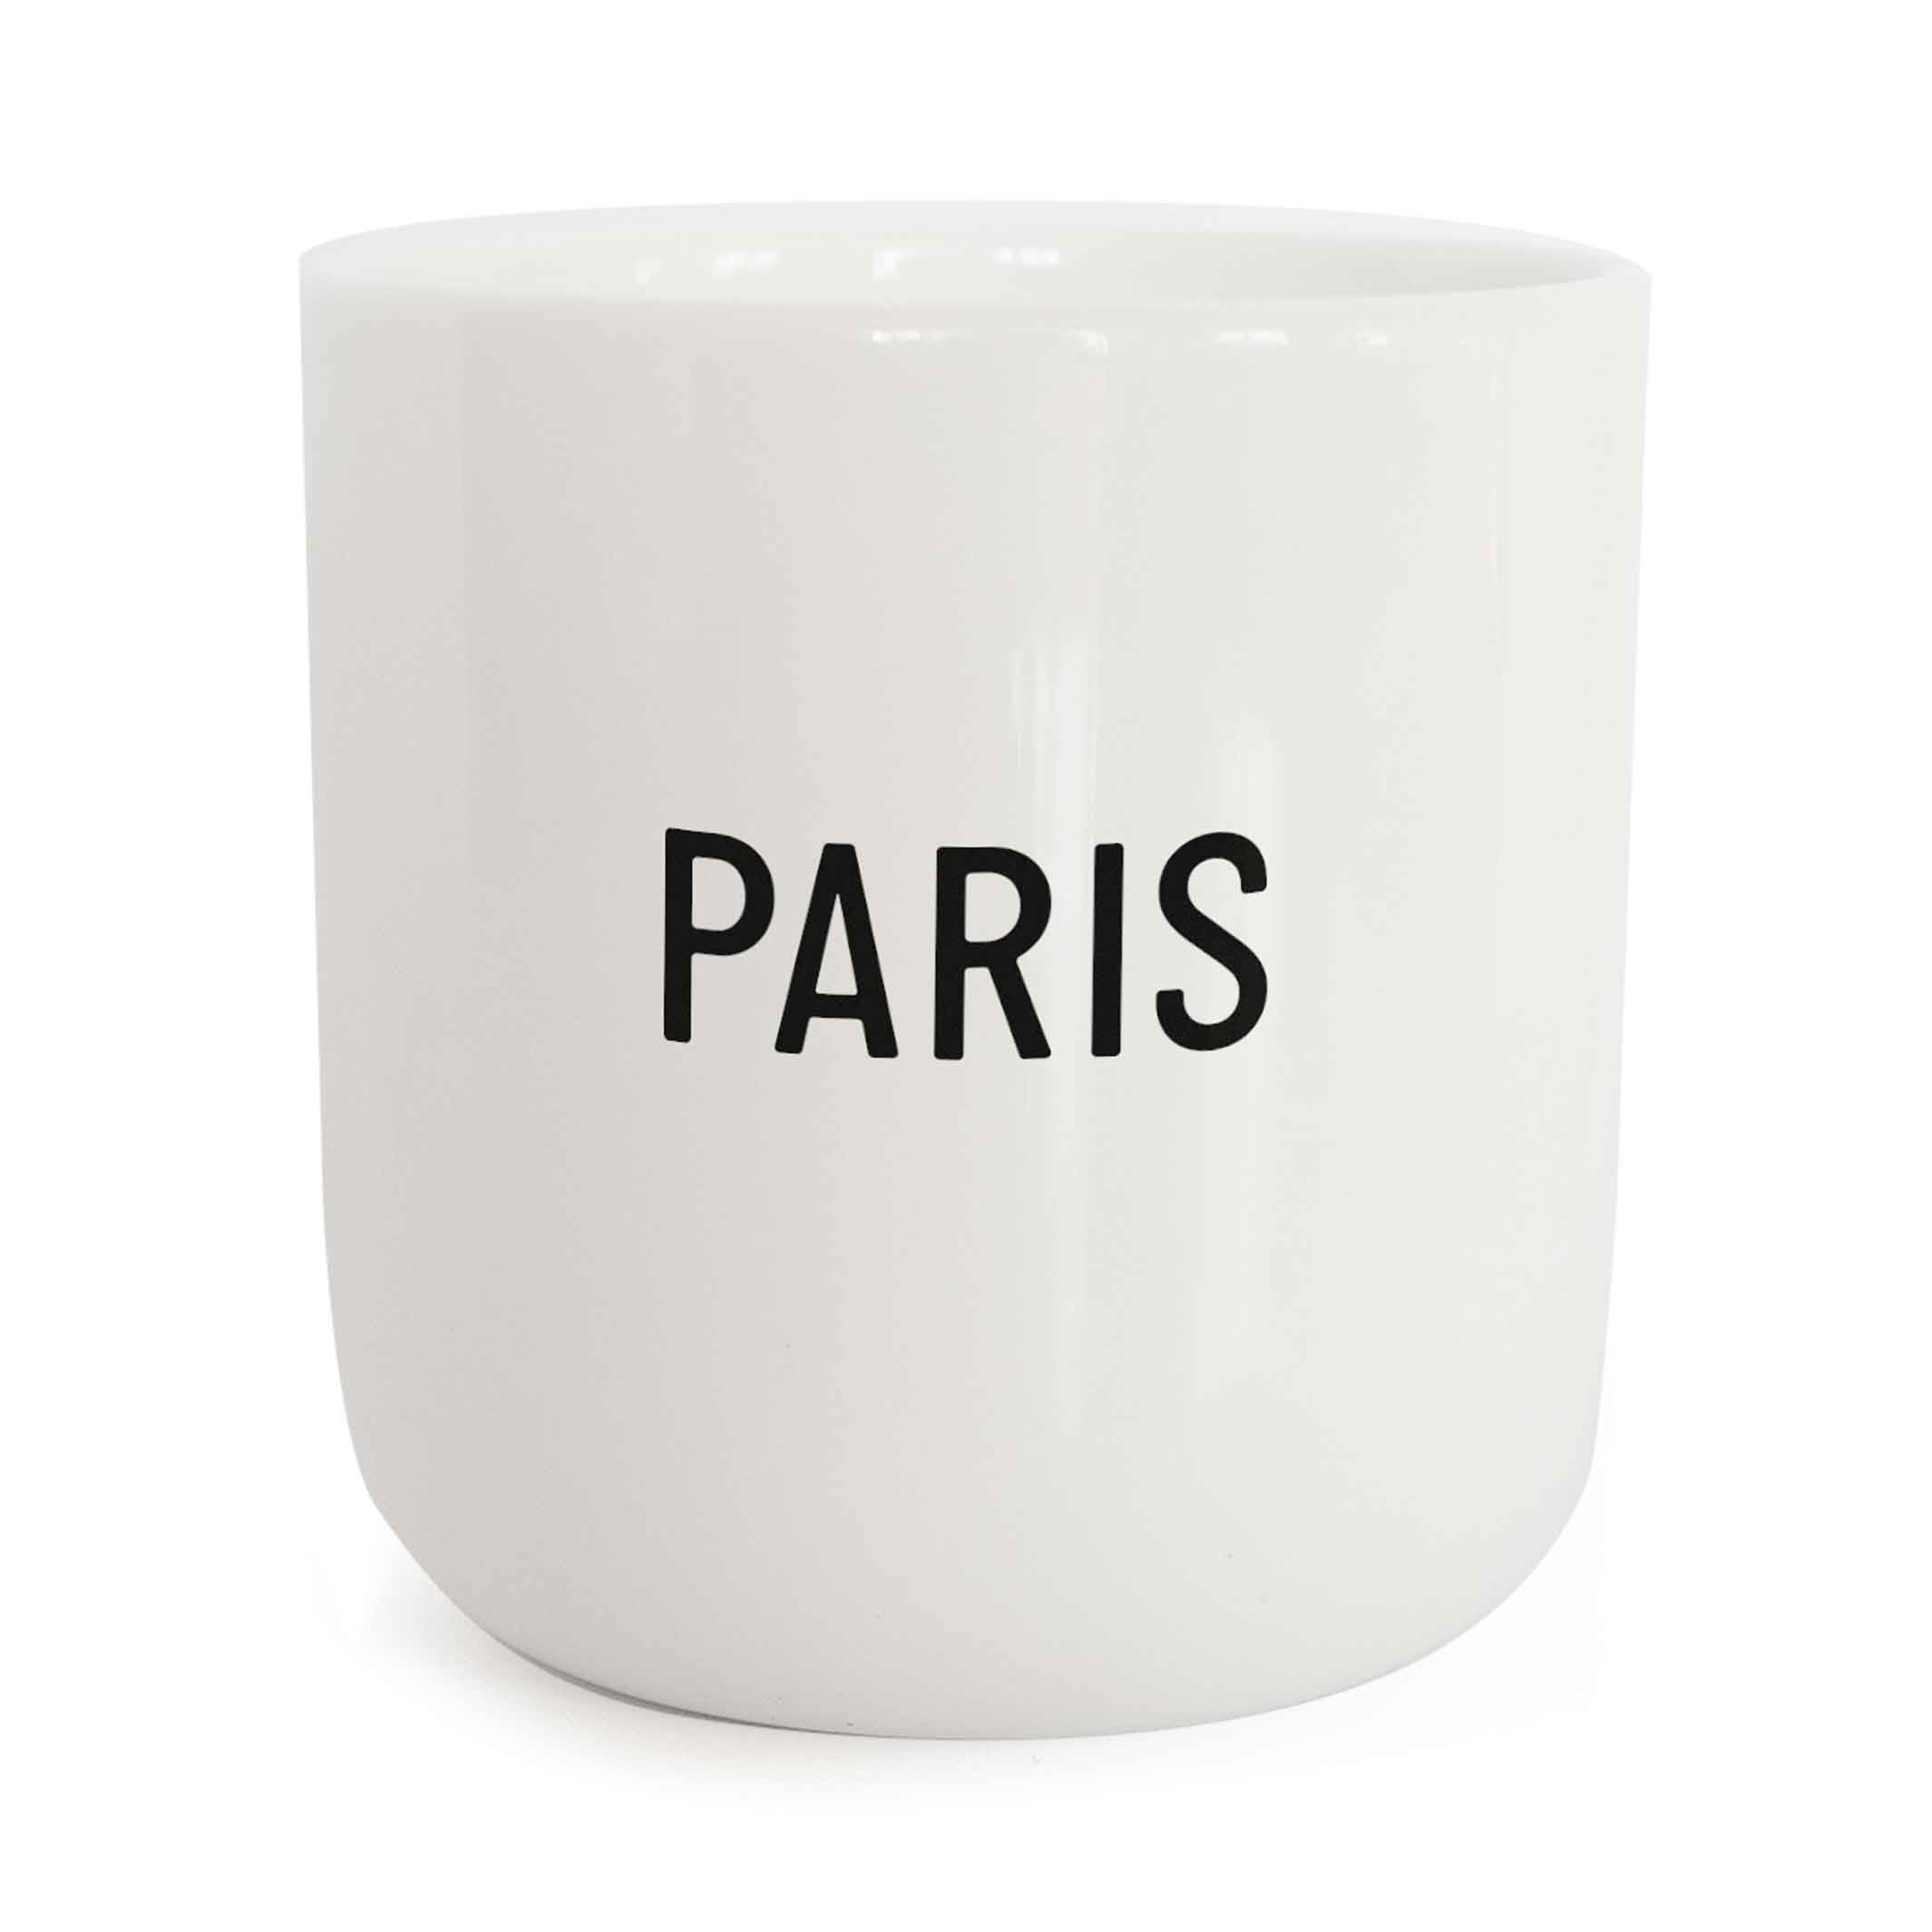 PARIS | weisser Kaffee- & Tee-BECHER mit schwarzer Typo | City Collection | PLTY